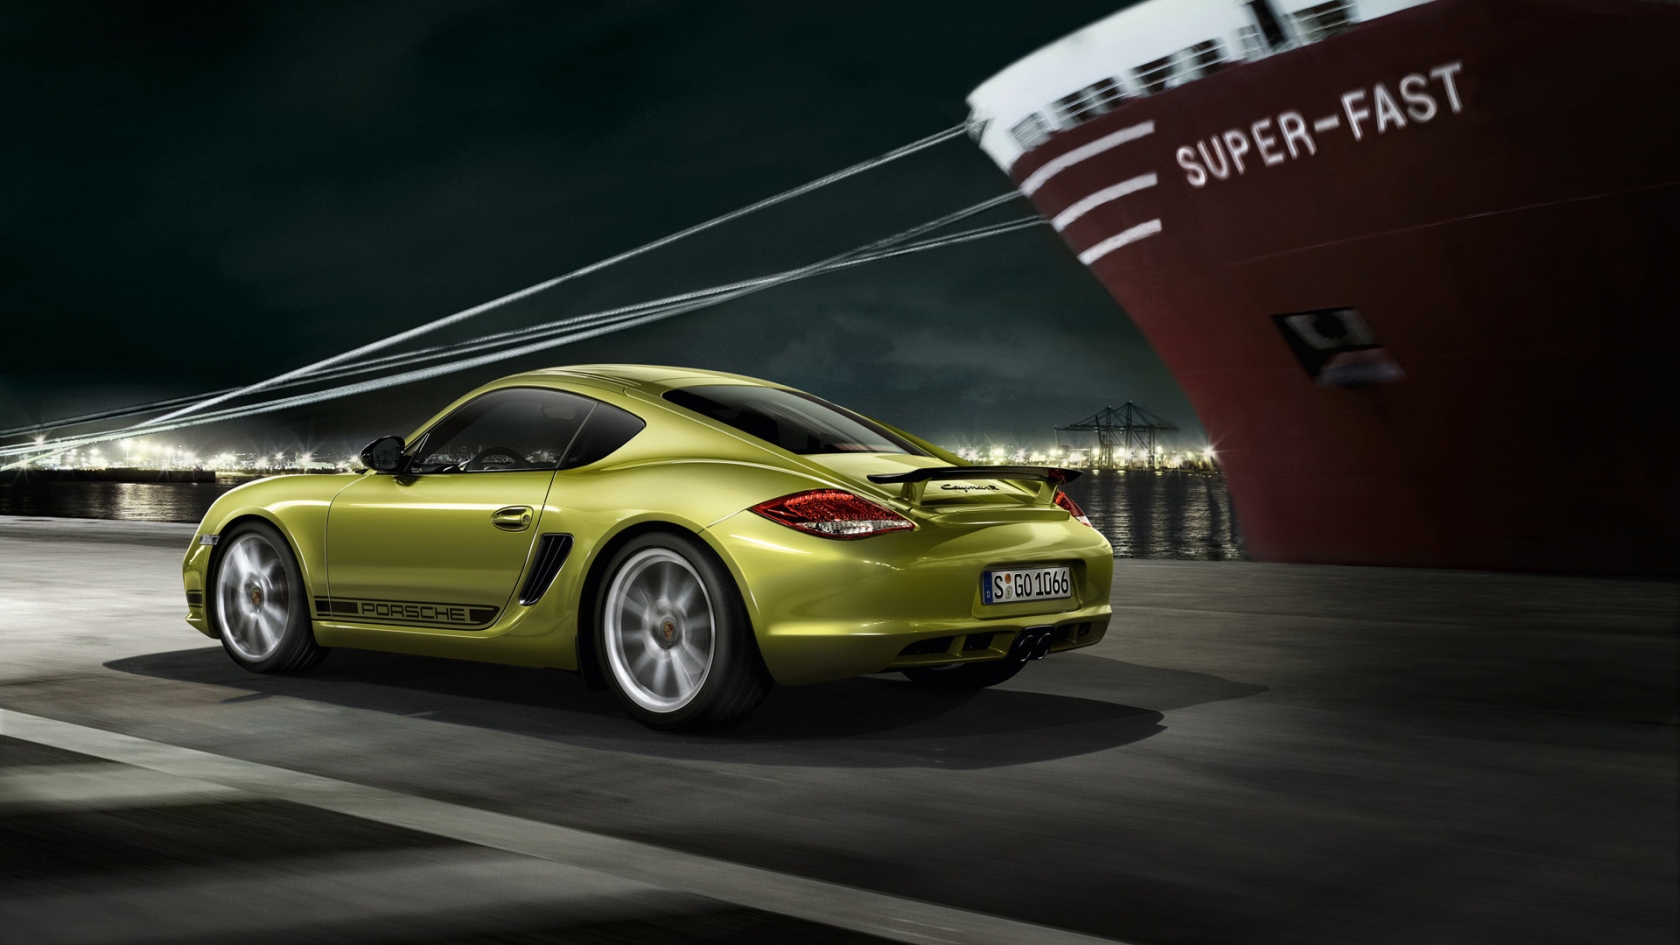 2011 Porsche Cayman R Speed for 1680 x 945 HDTV resolution